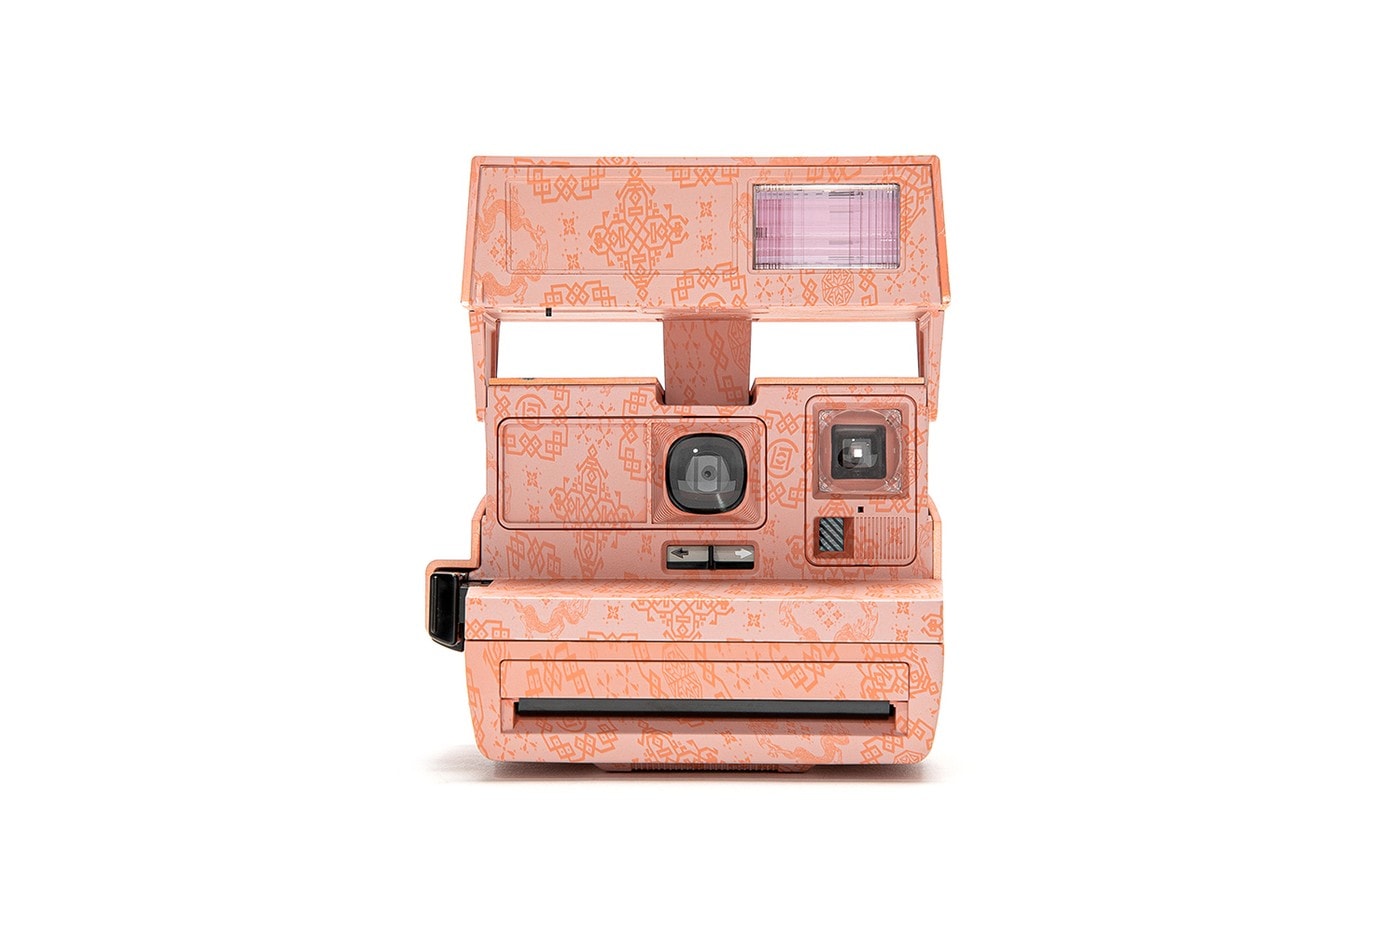 CLOT x Polaroid 600 全新聯乘「絲綢」拍立得相機發佈